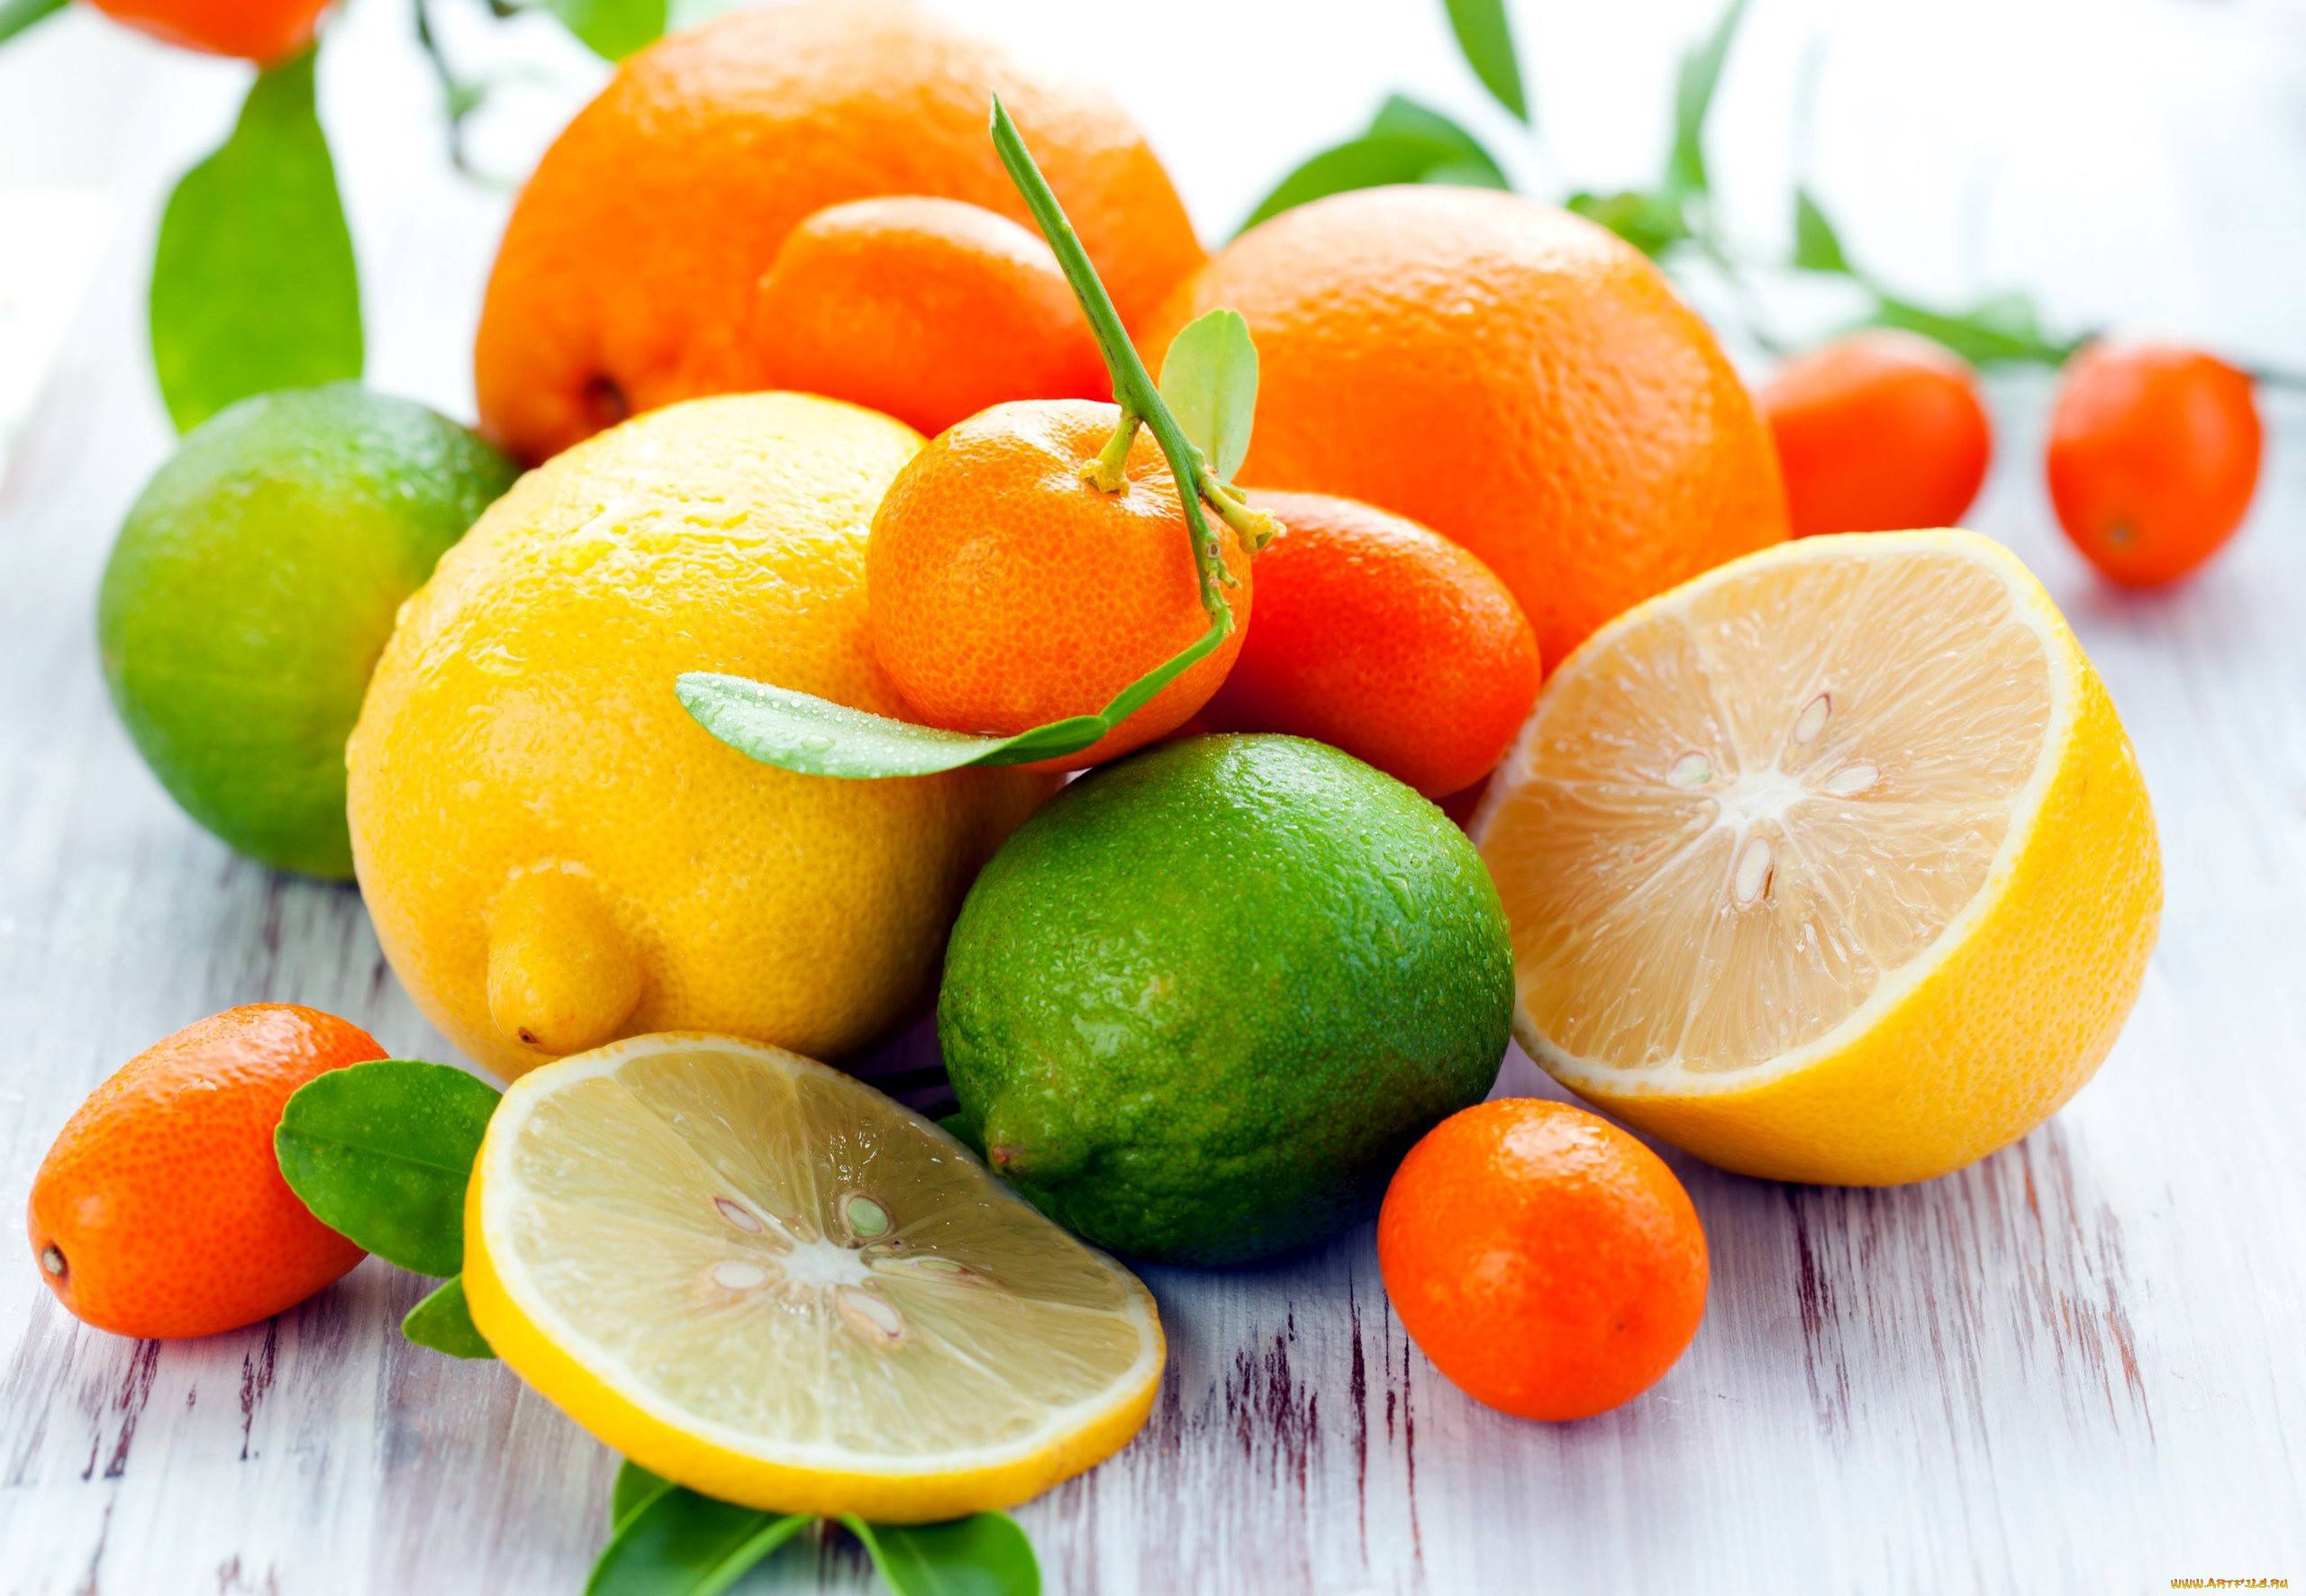 Мандарины и апельсины при гастрите: польза или вред в зависимости от кислотности